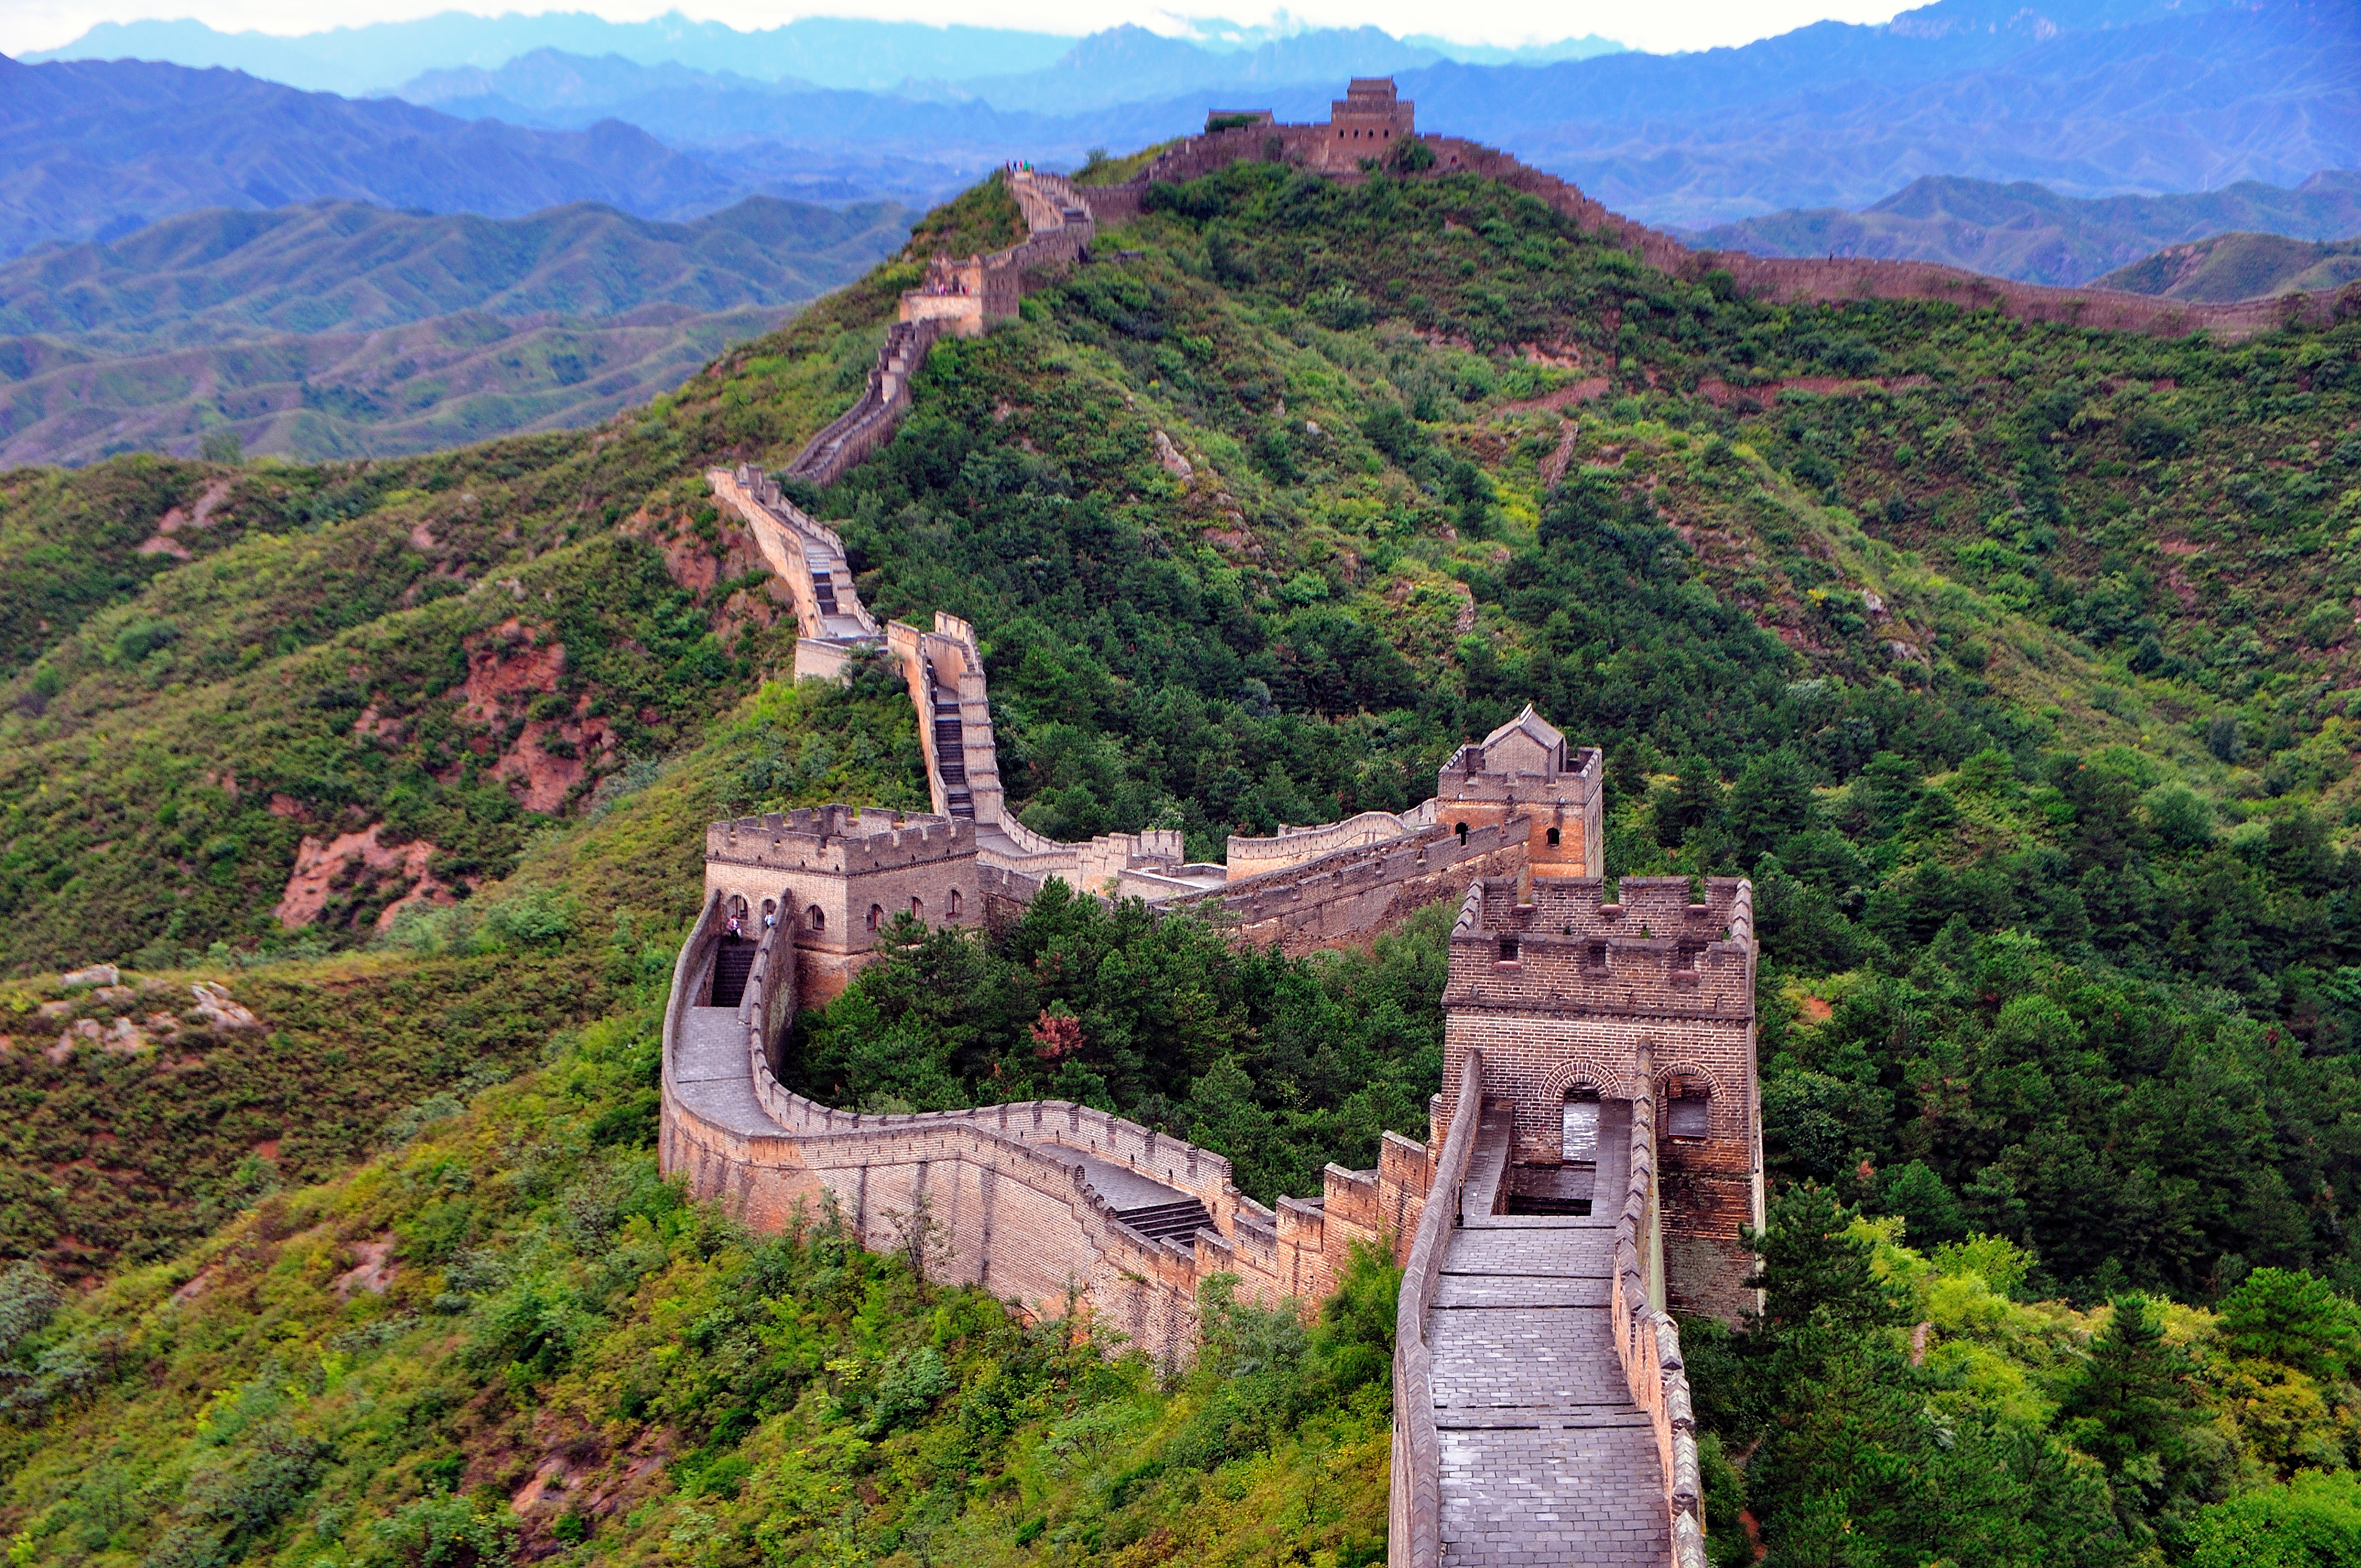 Die Kette sagte, dass es in China eine Wende gegeben habe, nachdem die Covid-Beschränkungen gelockert worden seien – abgebildet ist die Chinesische Mauer